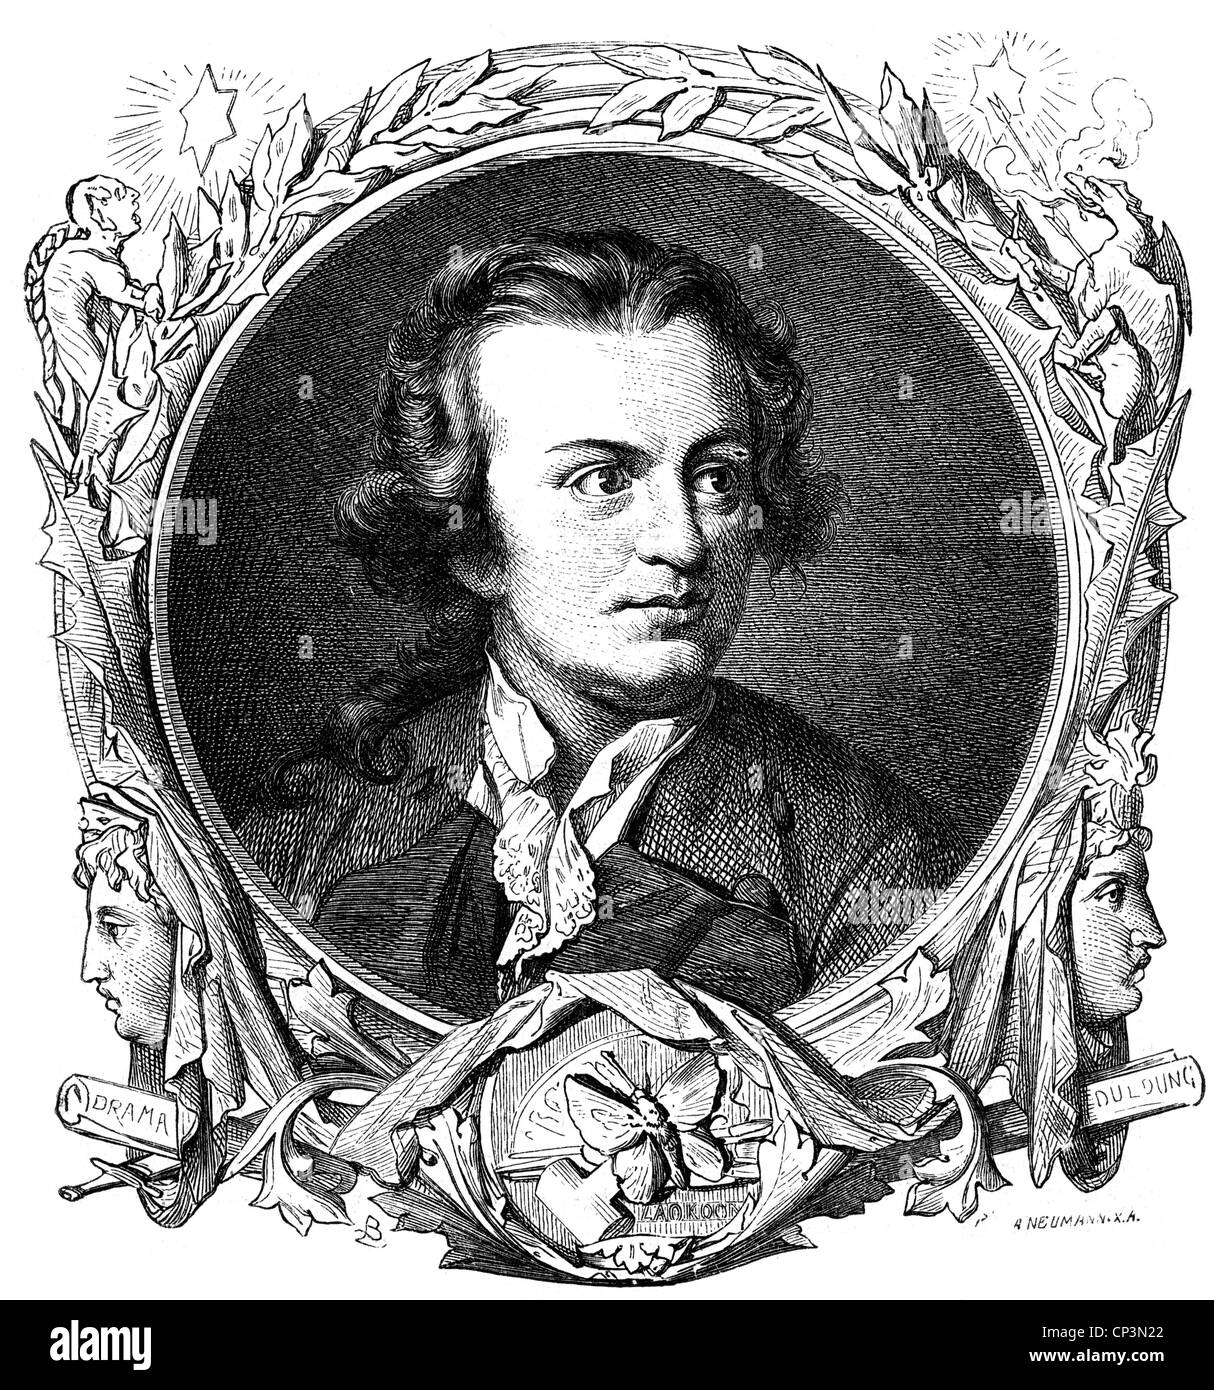 Lessing, Gothold Ephraim, 22.1.1729 - 15.2.1781, deutscher Autor/Schriftsteller, Porträt, Holzgravur, 1889, Stockfoto